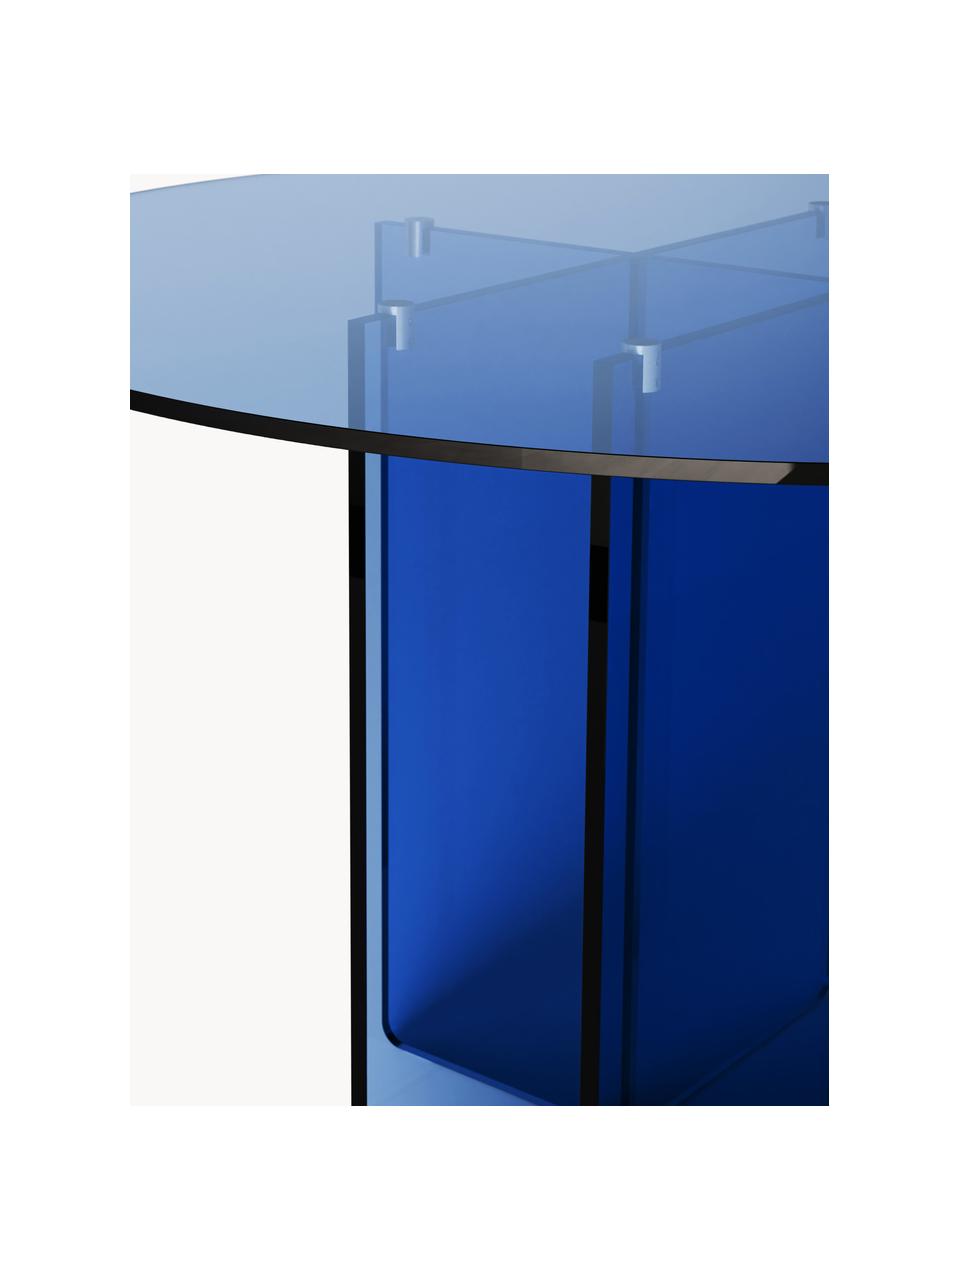 Runder Glas-Esstisch Anouk, Ø 120 cm, Glas, Blau, Ø 120 cm